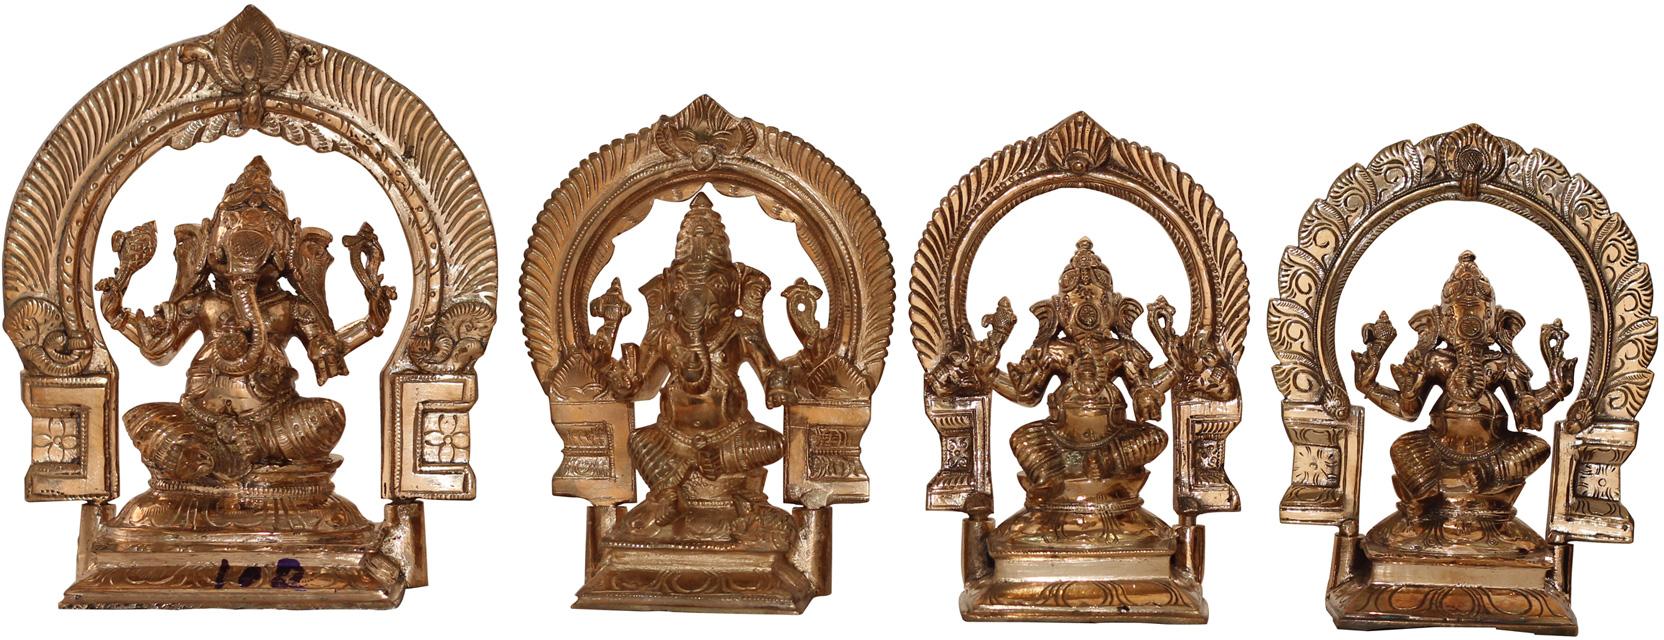 Lord Ganesh with Ornamental arch